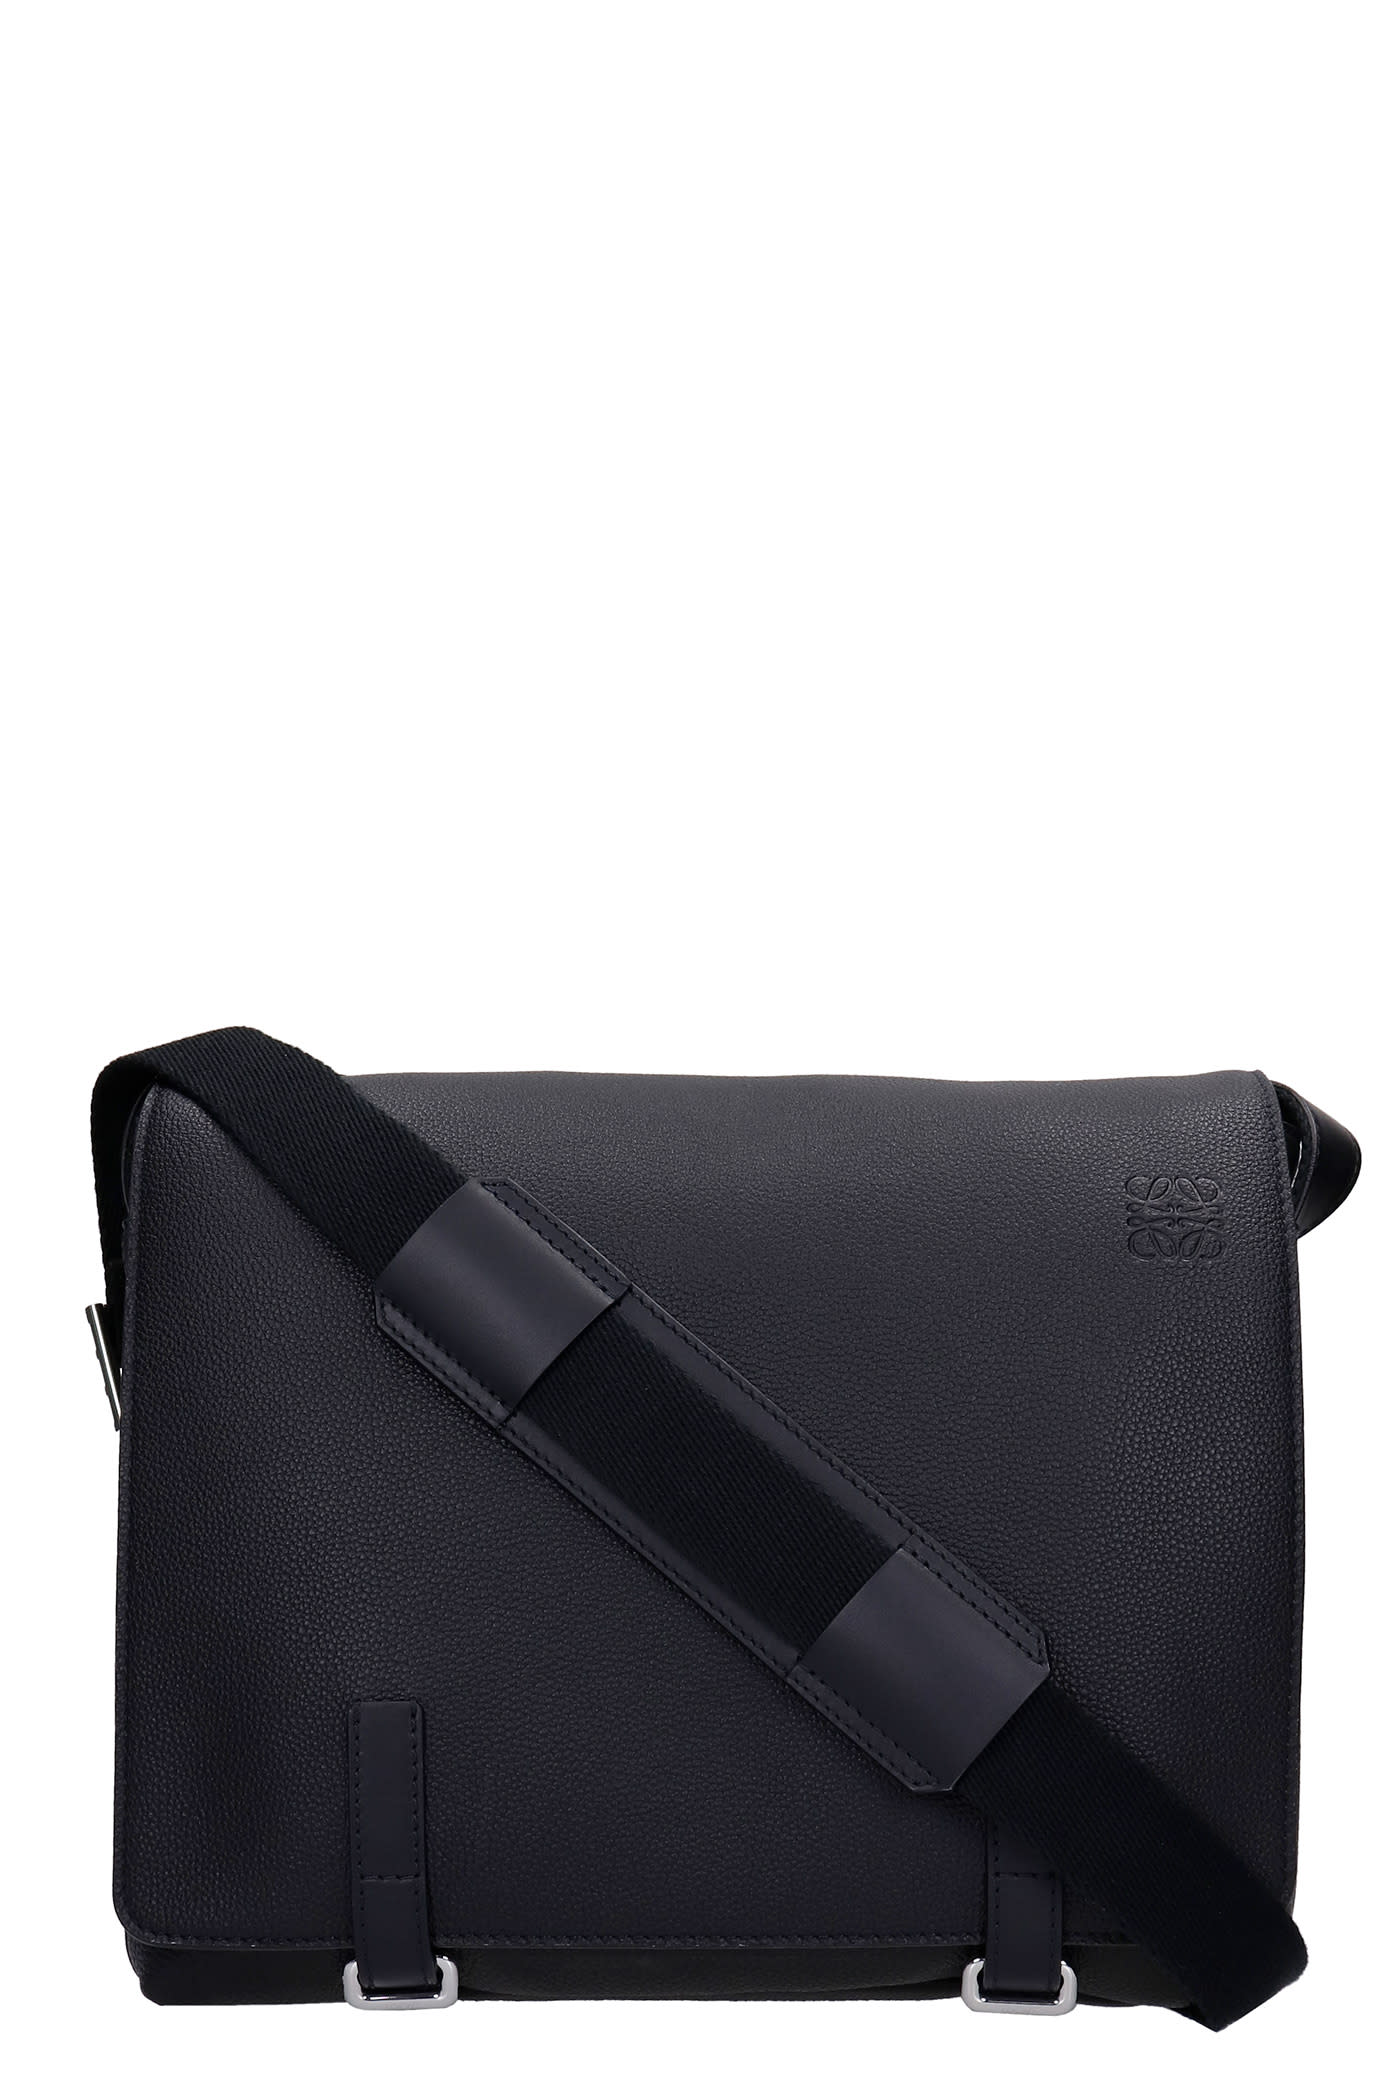 Loewe Messanger Shoulder Bag In Black Leather